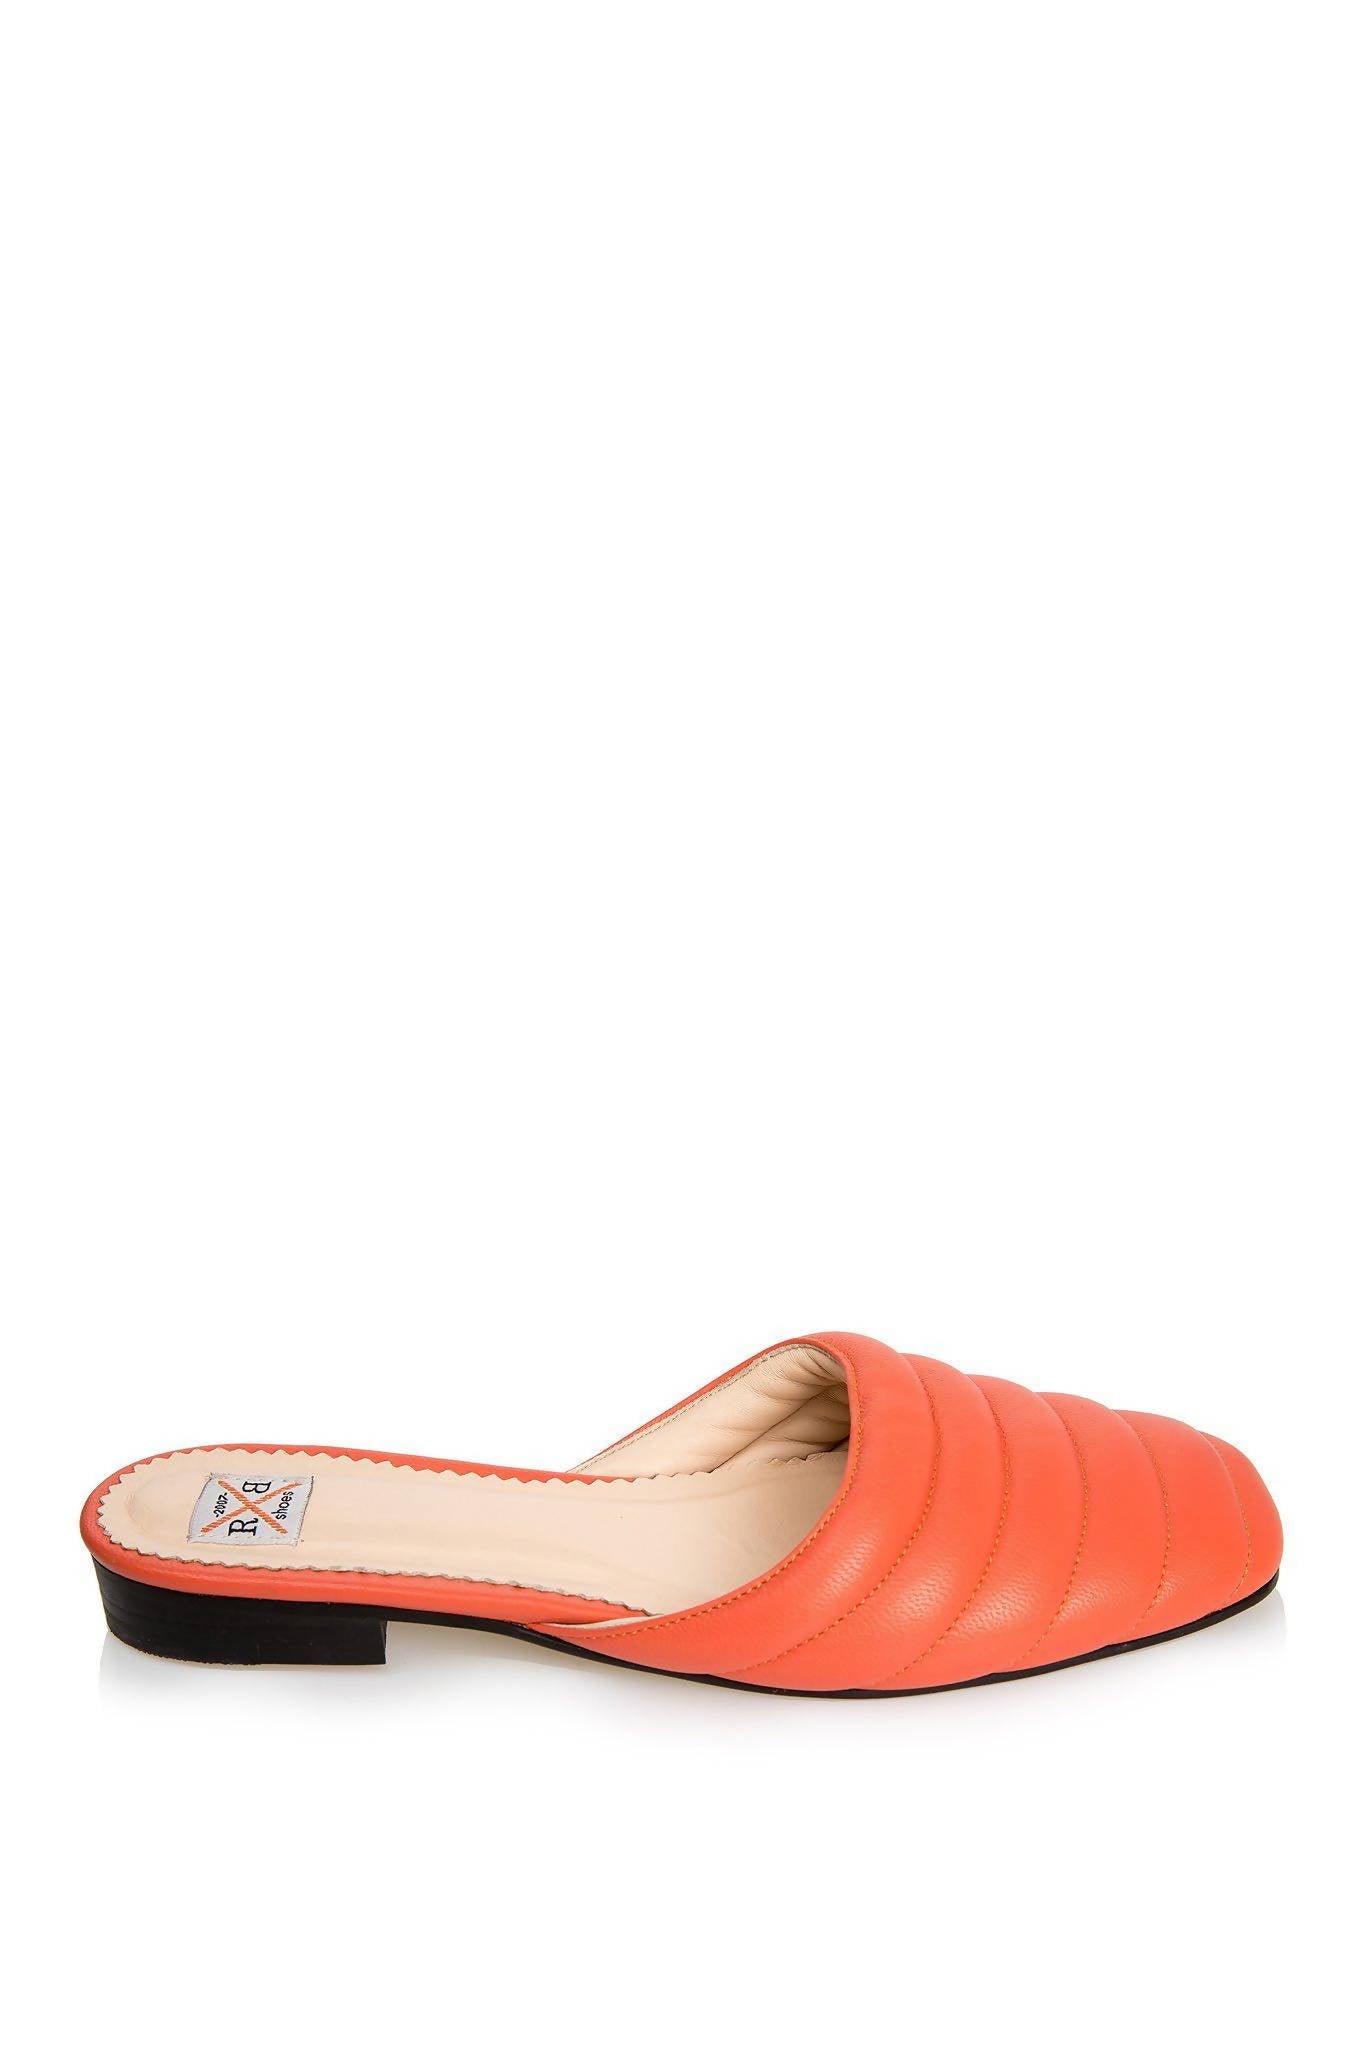 orange mule shoes